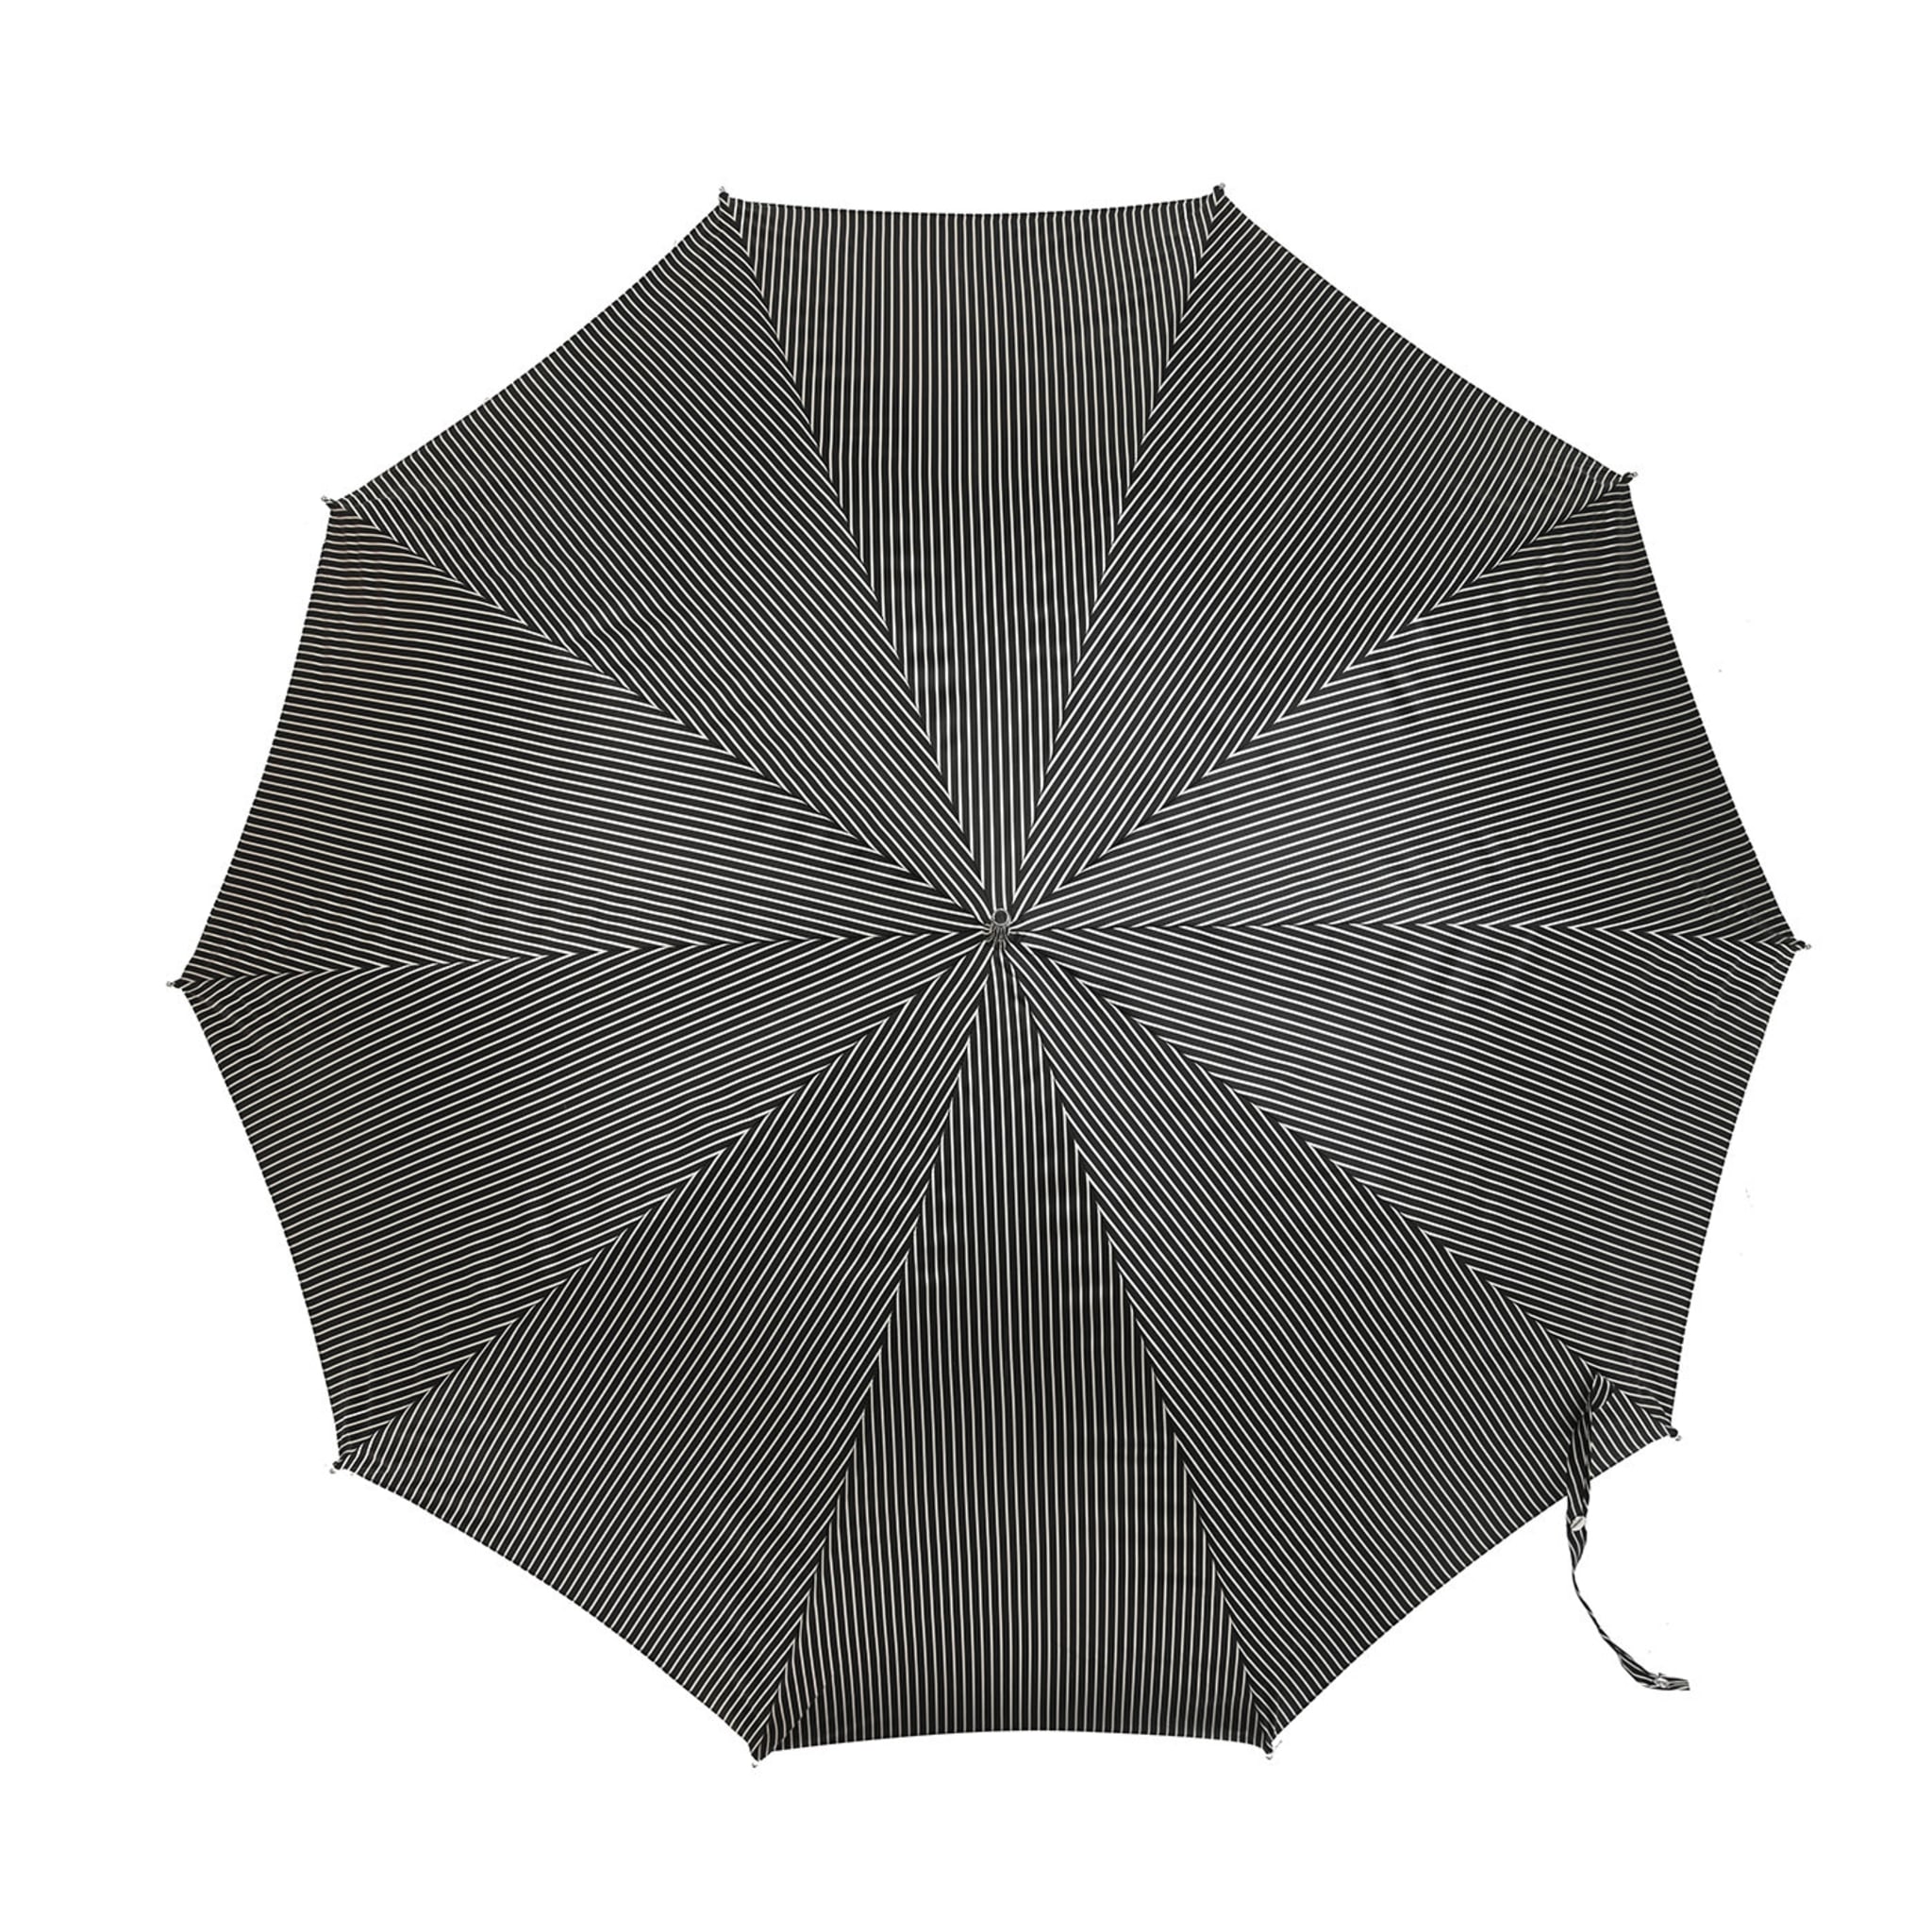 Schwarz-weiß gestreifter Regenschirm mit schwarzem Totenkopf-Griff - Alternative Ansicht 1